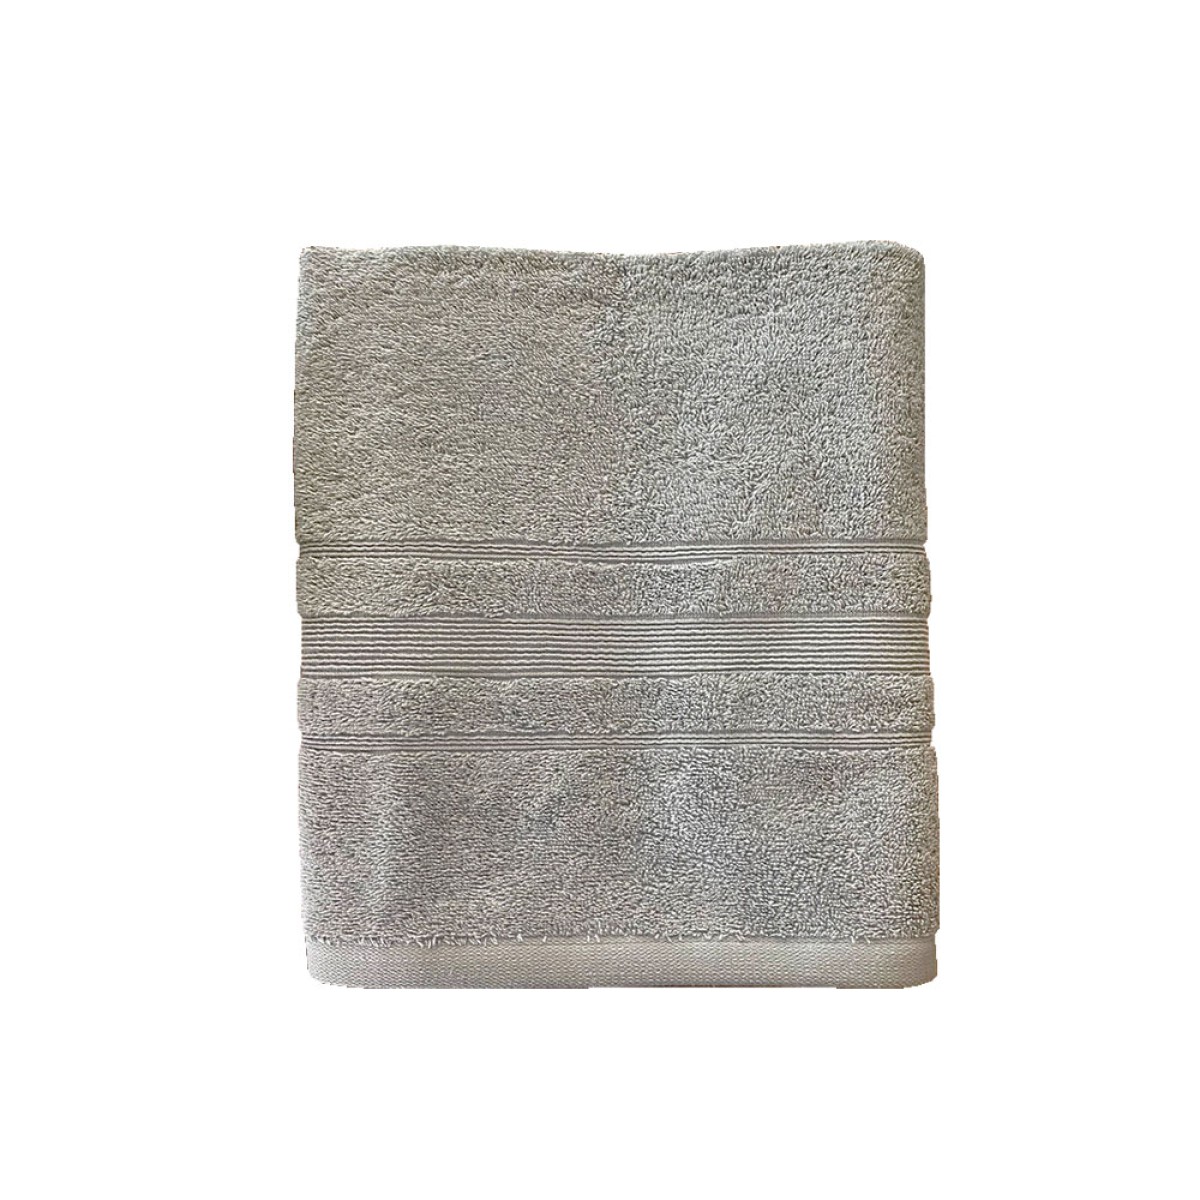 Πετσέτα Προσώπου 550grs (50x90) 100% Βαμβάκι με μπορντούρα με ανάγλυφο σχέδιο ανοιχτό γκρι χρώμα Sidirela Line E-3202-5